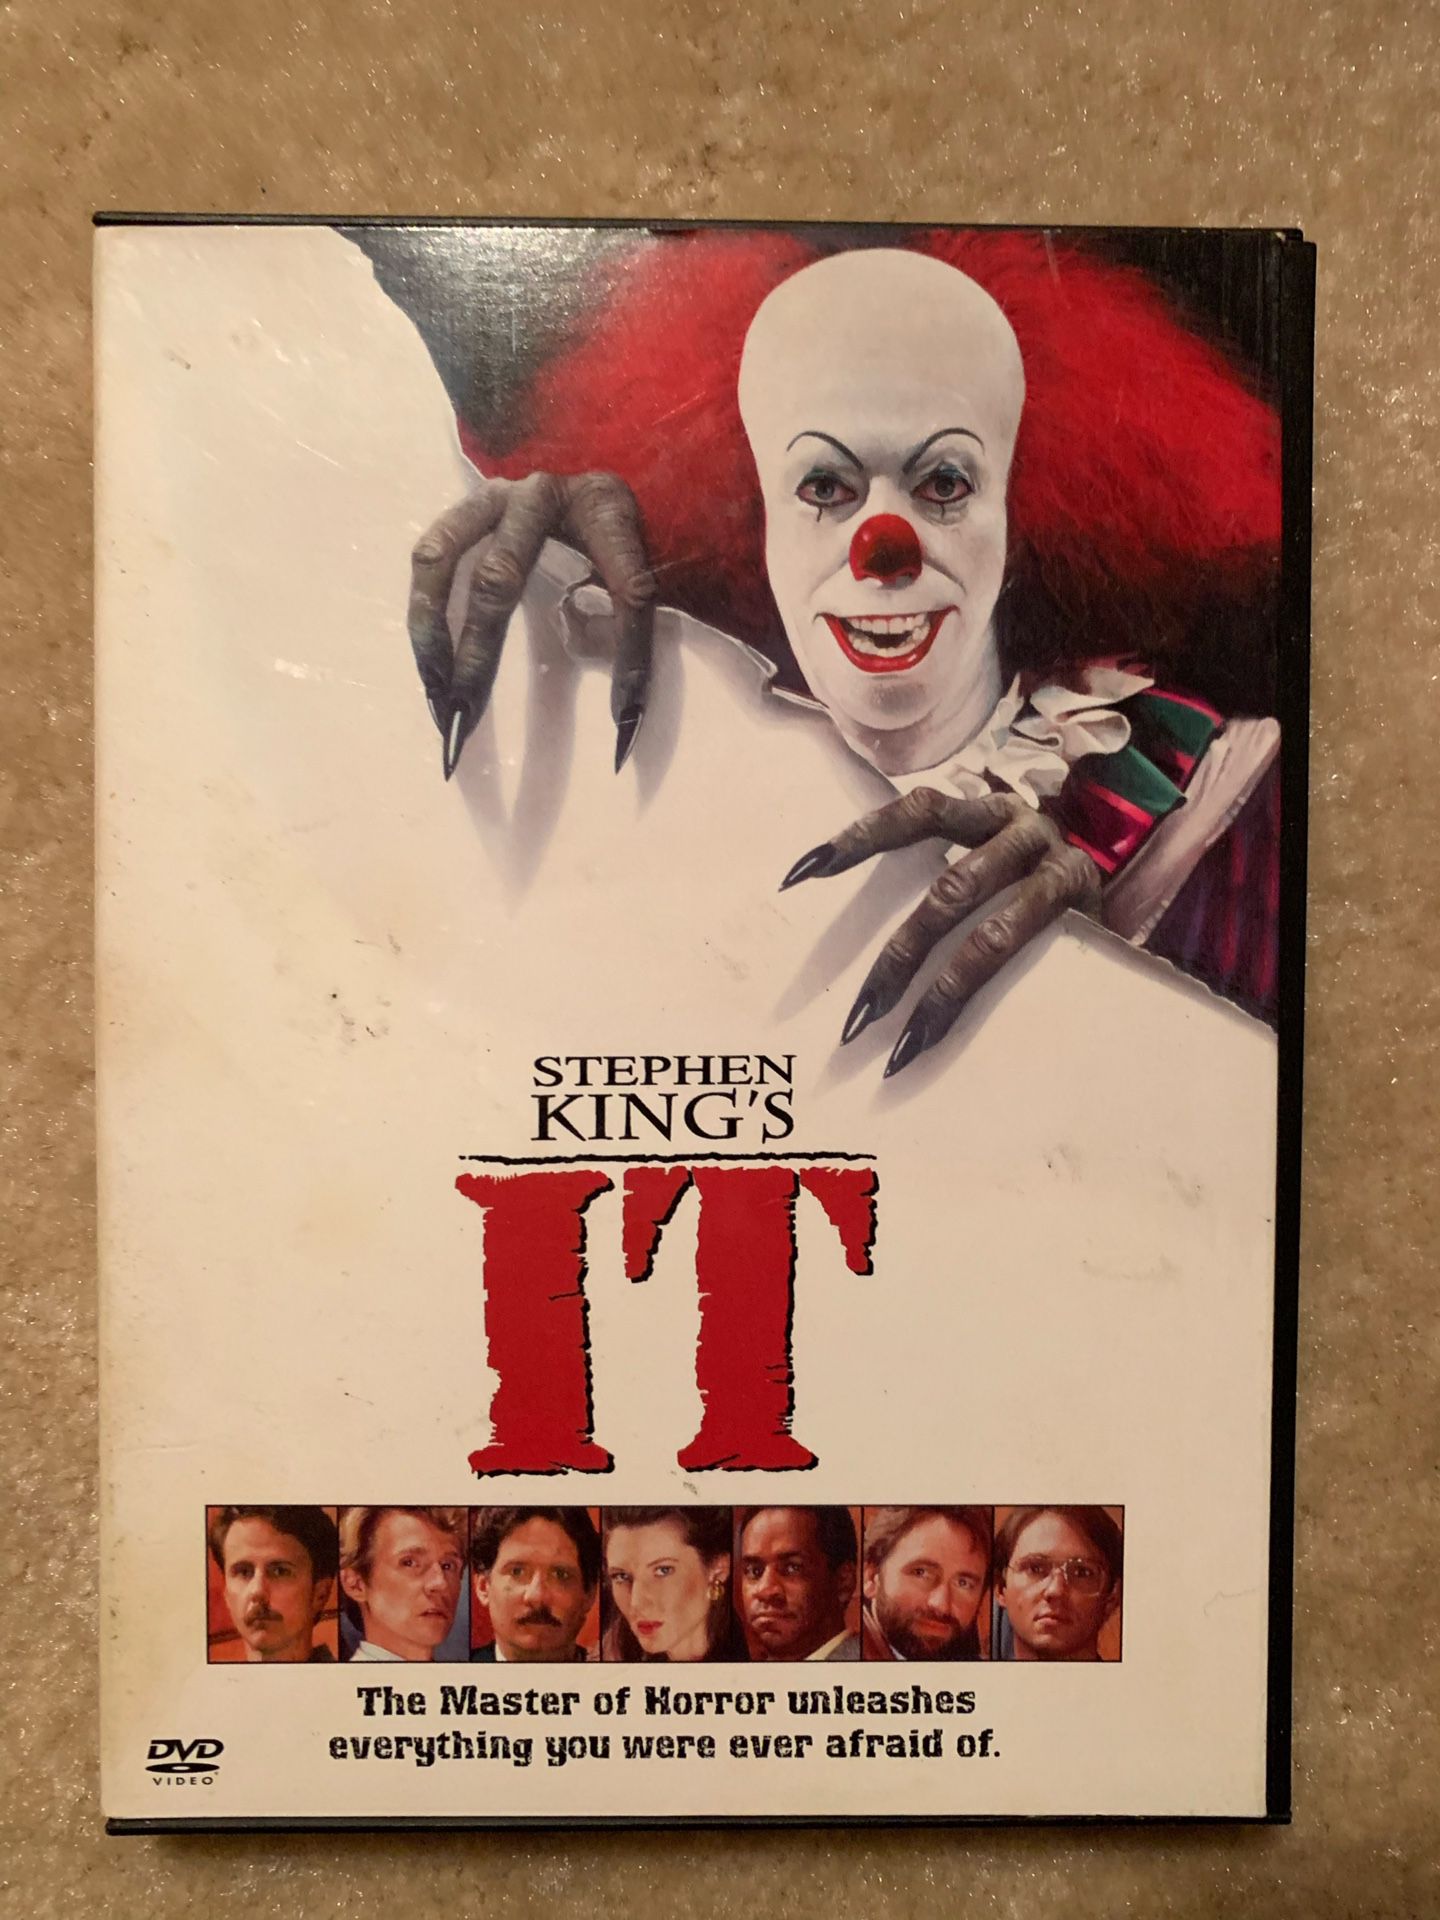 Stephen Kings original IT DVD